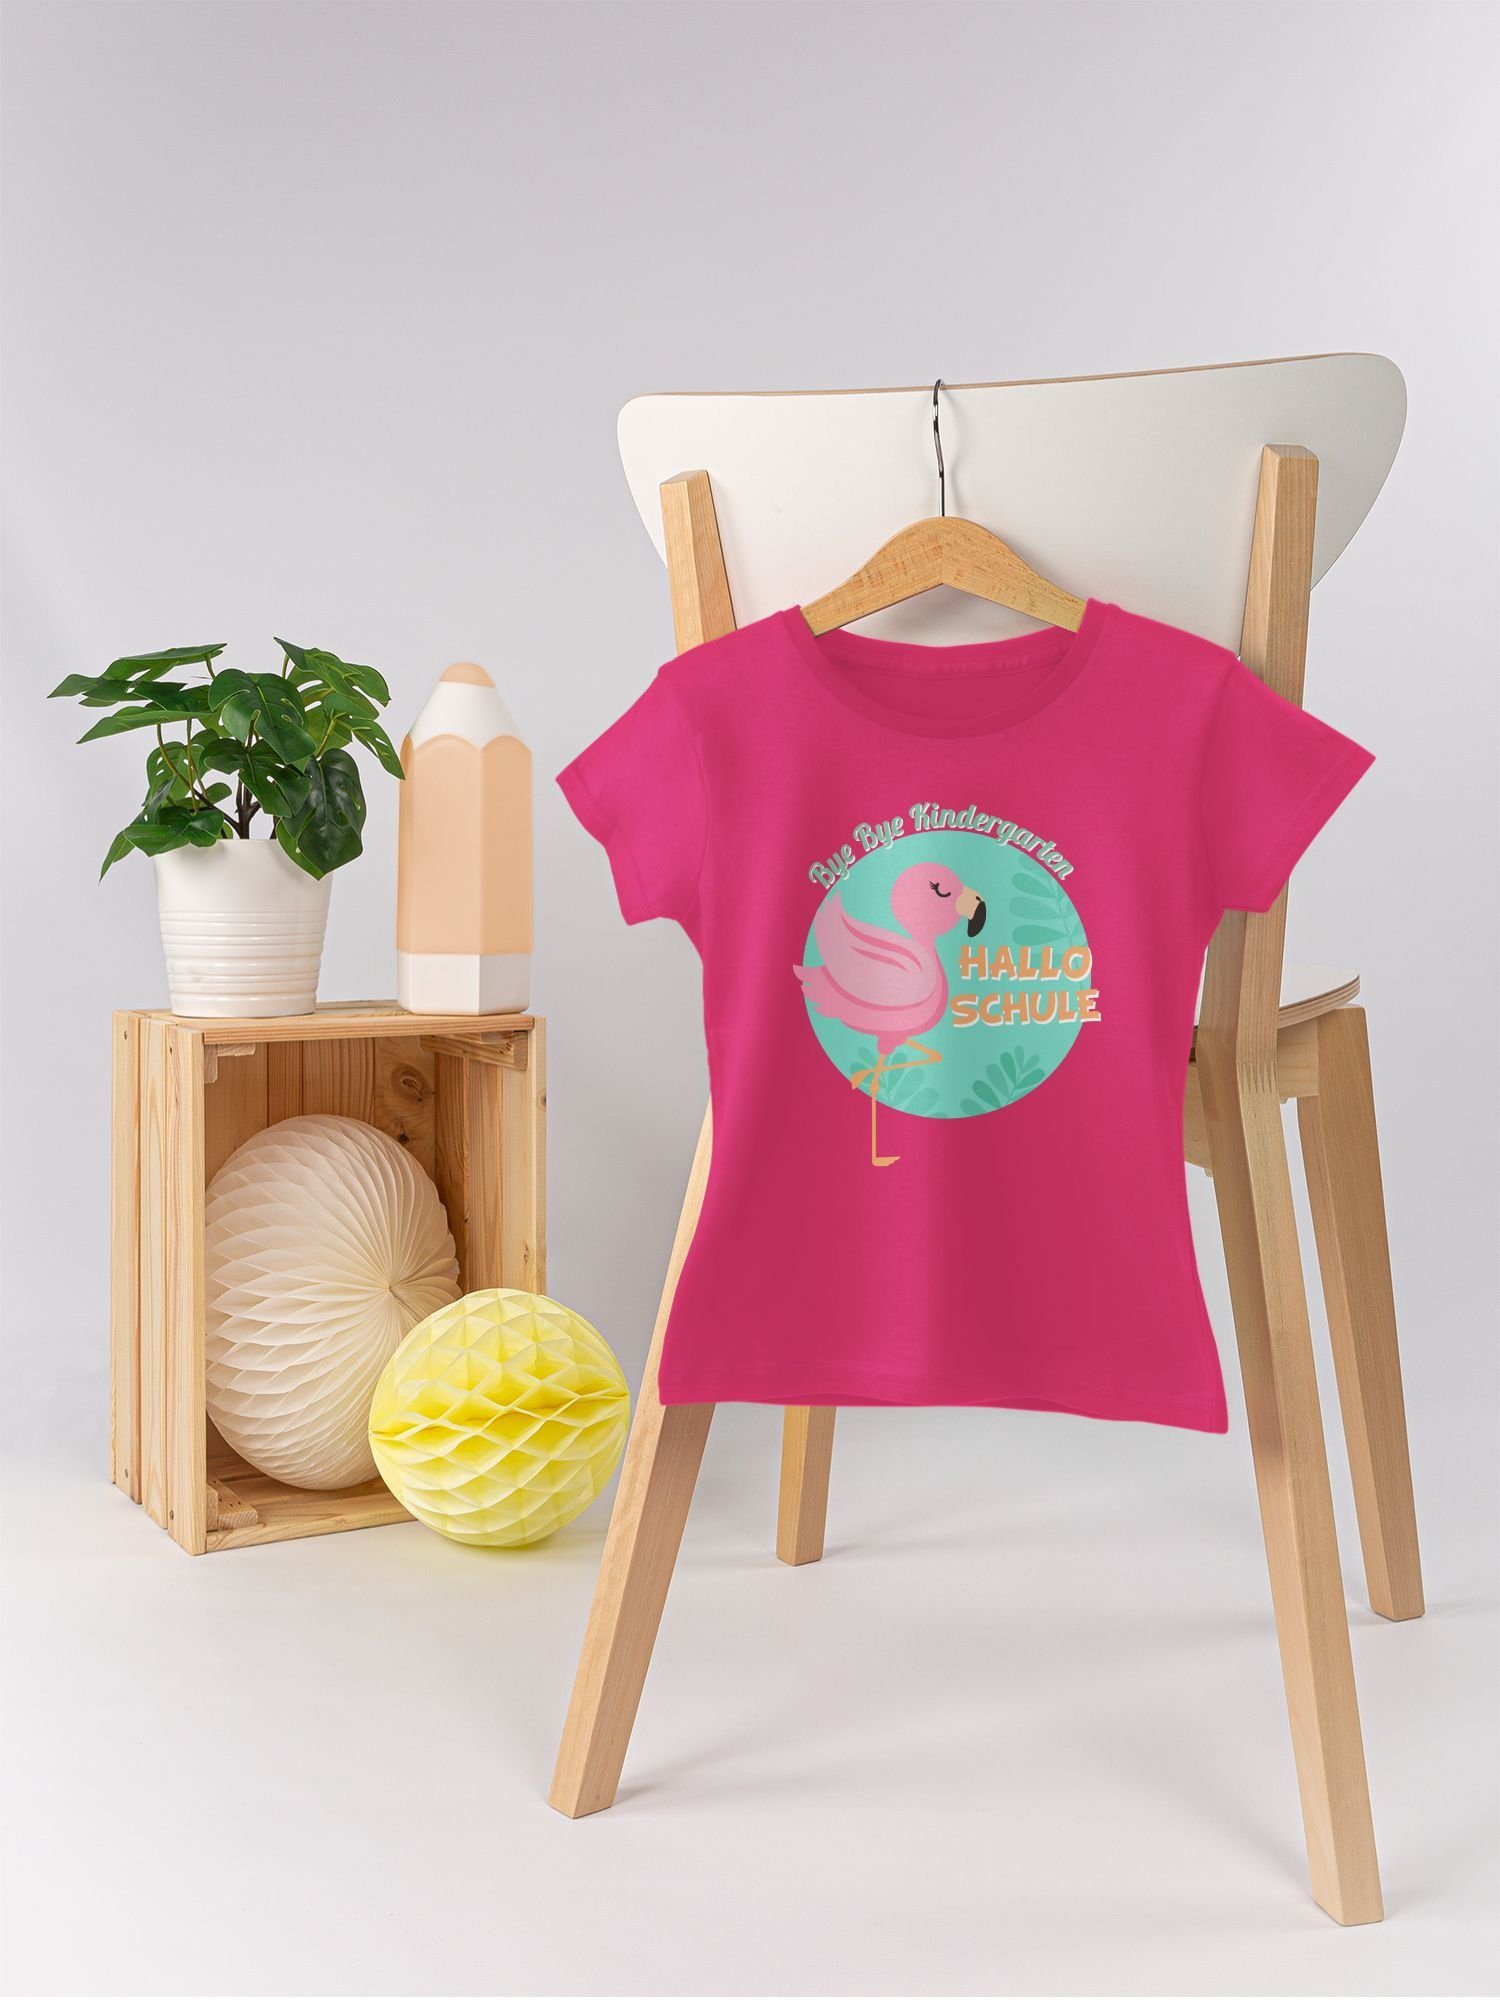 Shirtracer T-Shirt Flamingo Bye Schule Hallo Mädchen Kindergarten Bye 1 Einschulung Fuchsia